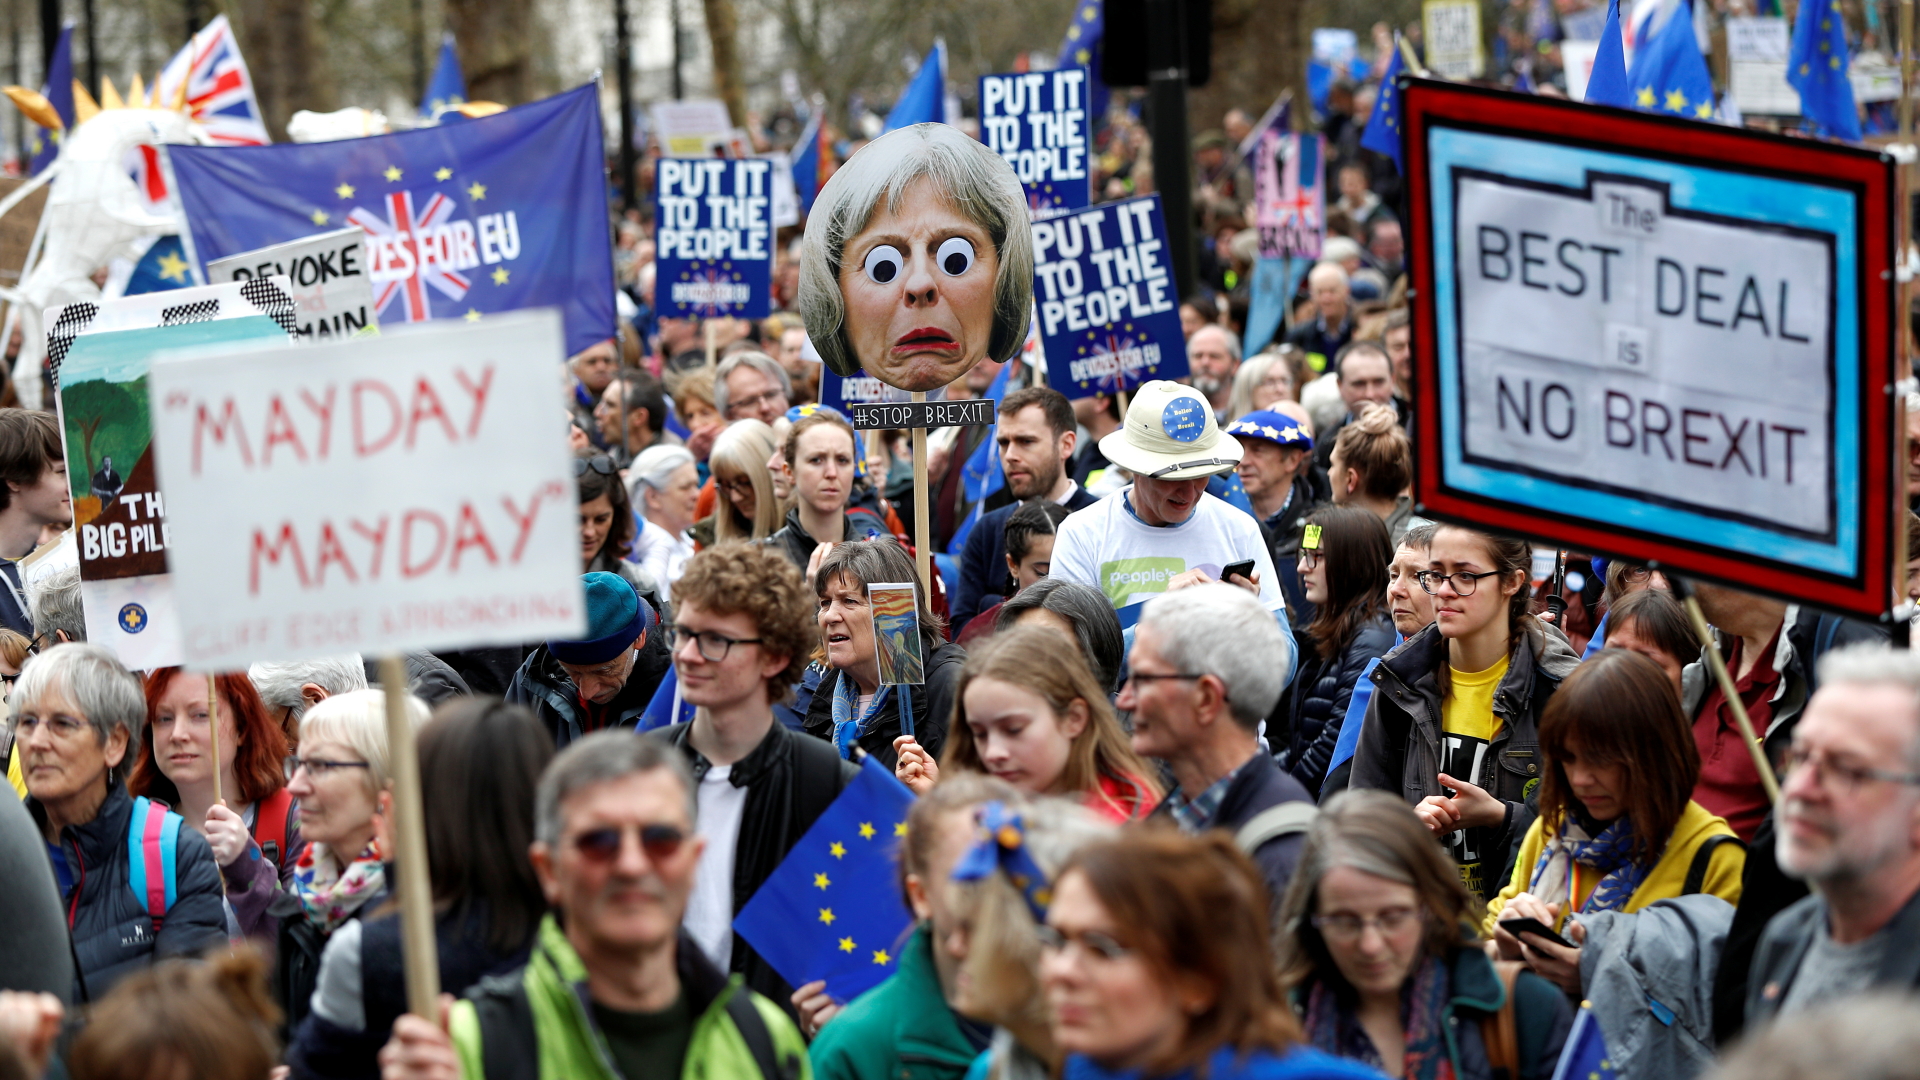 Brexit-Gegner ziehen mit EU-Fahnen und Plakaten durch London. | REUTERS